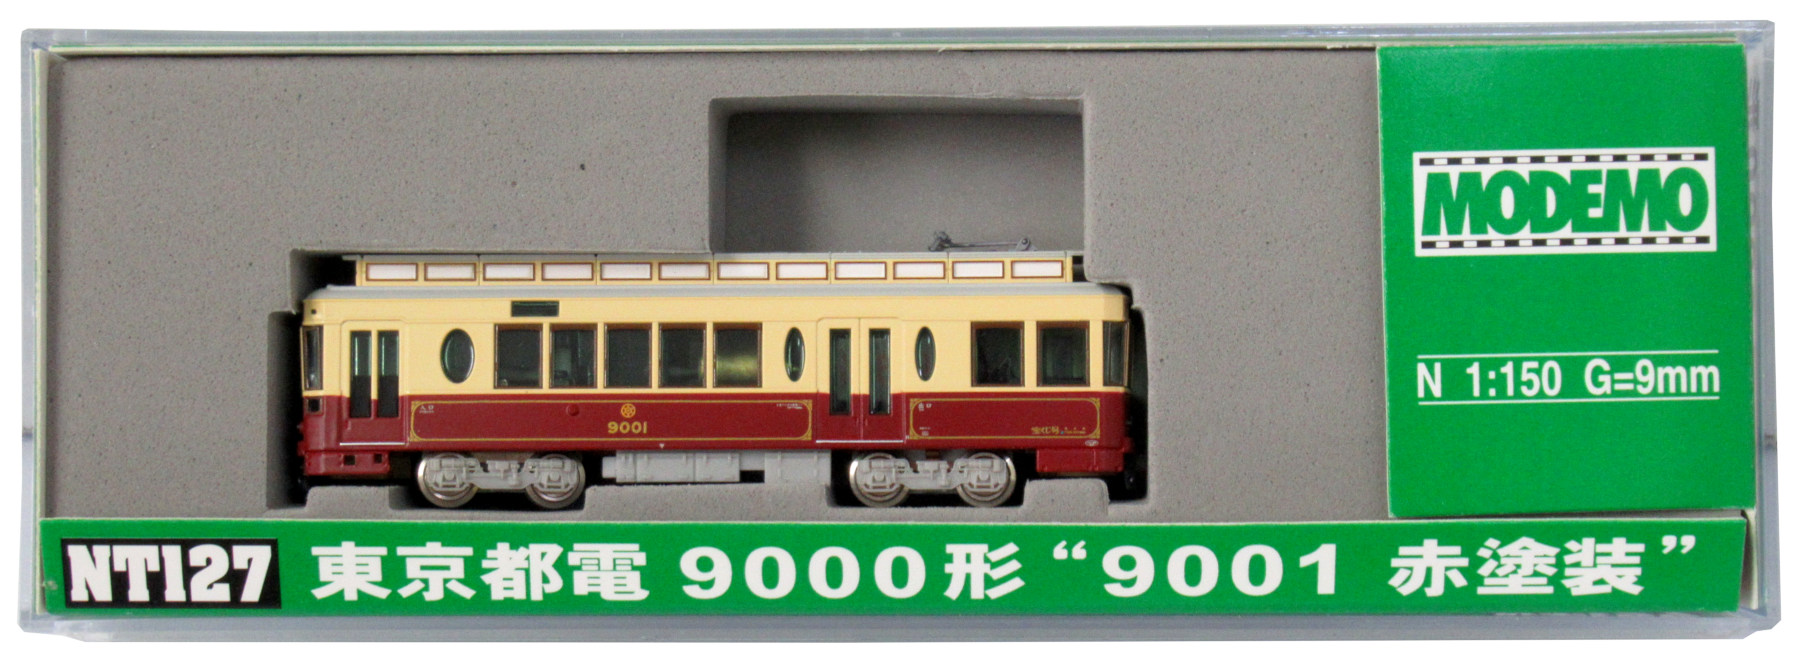 公式]鉄道模型(NT127東京都電 9000形 “9001 赤塗装” (M車))商品詳細 